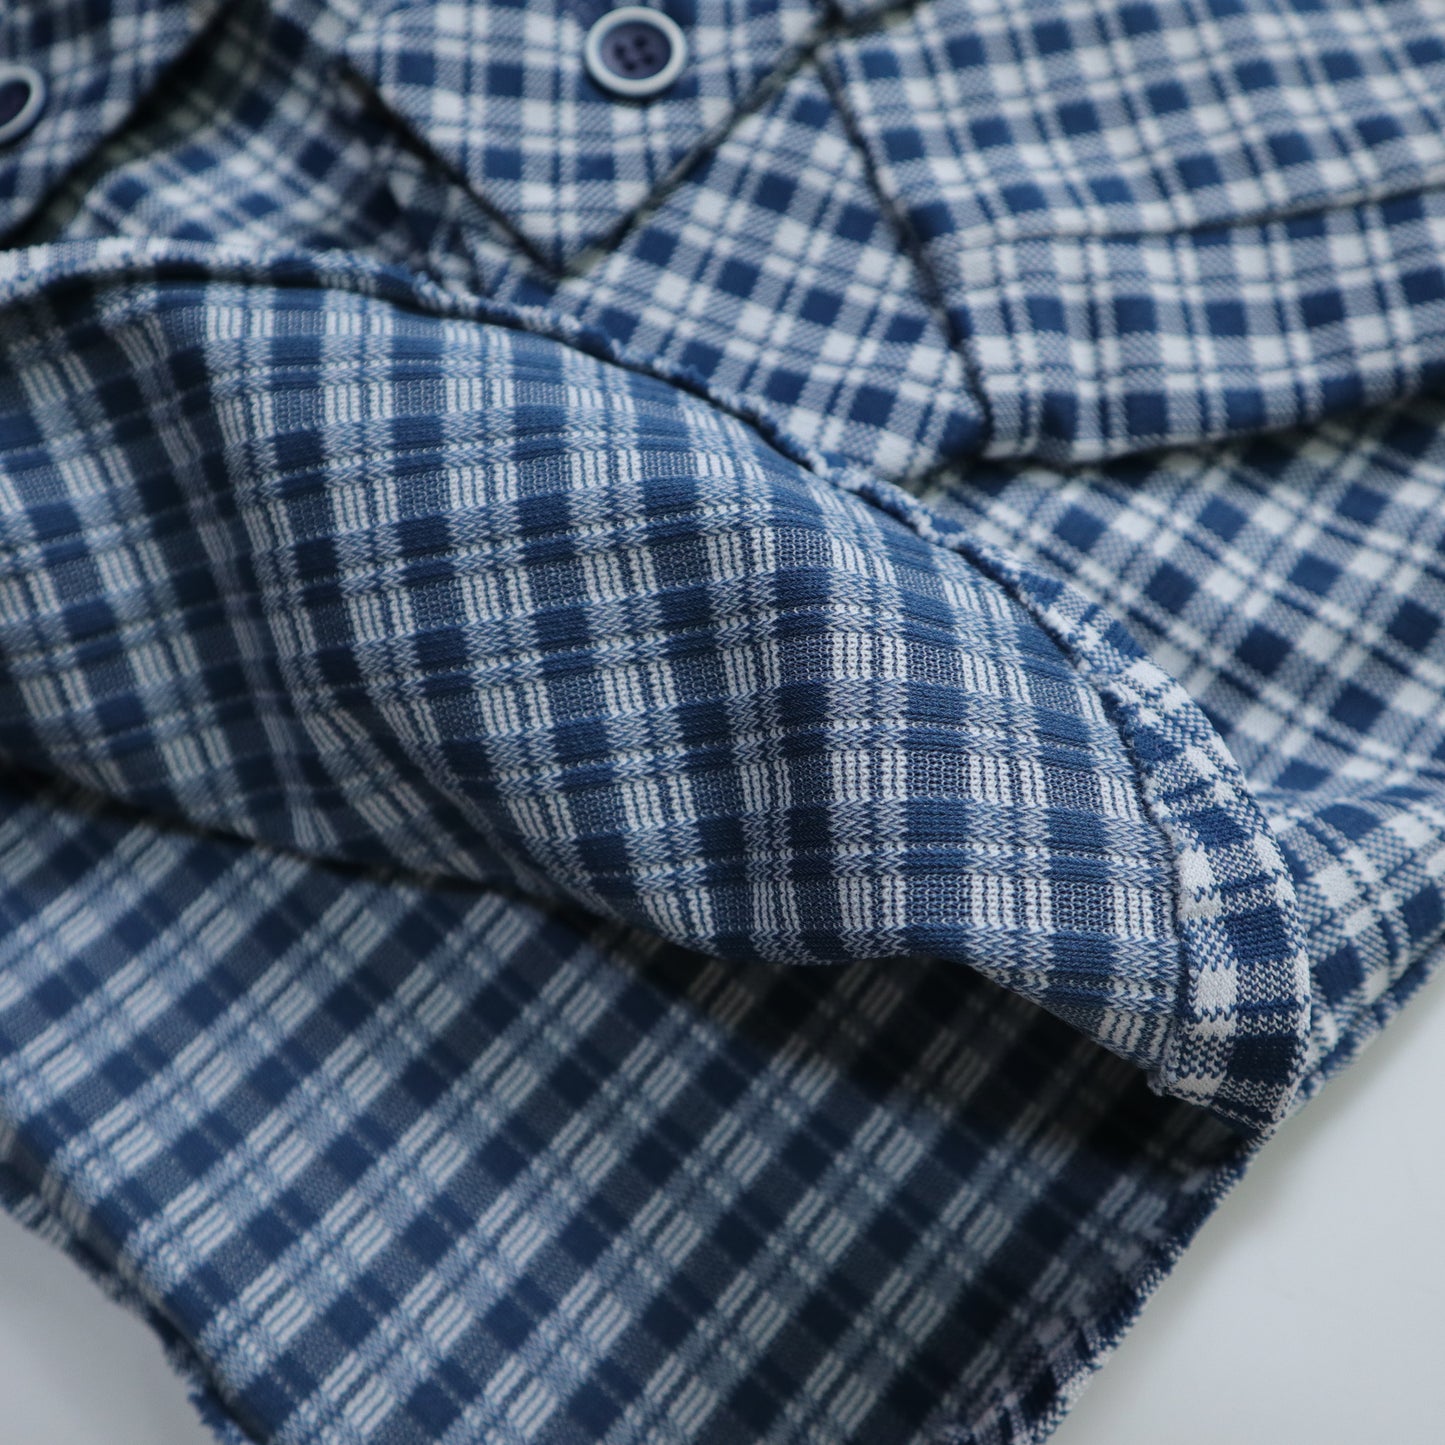 1970年代の青と白のチェック柄ダブルポケットアローカラーシャツ